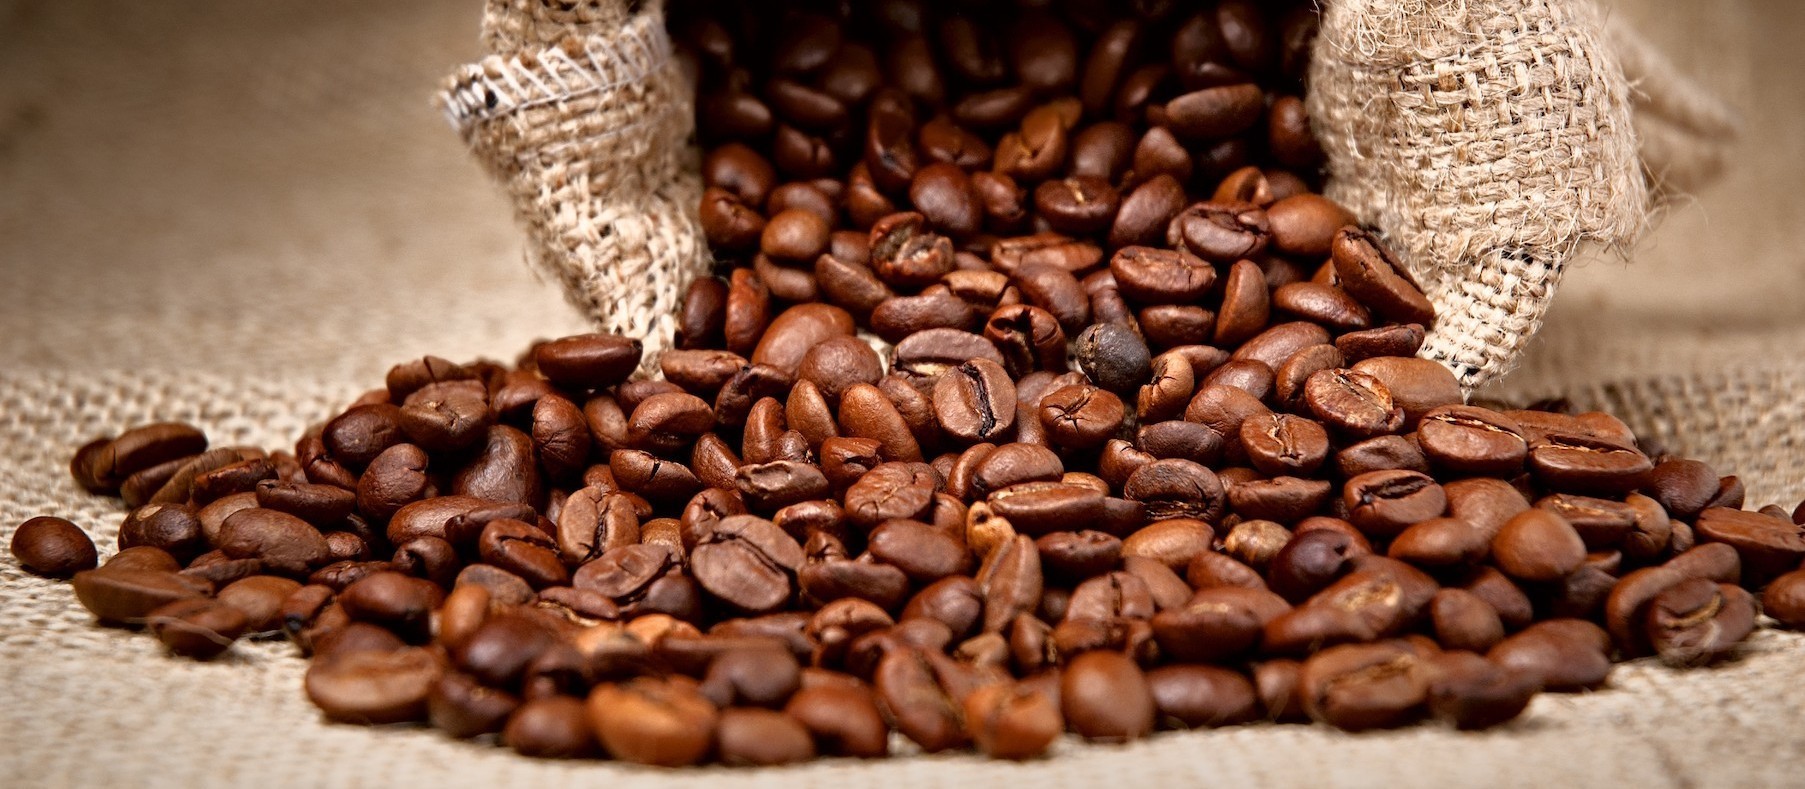 Saca do café custa R$ 380 em Umuarama